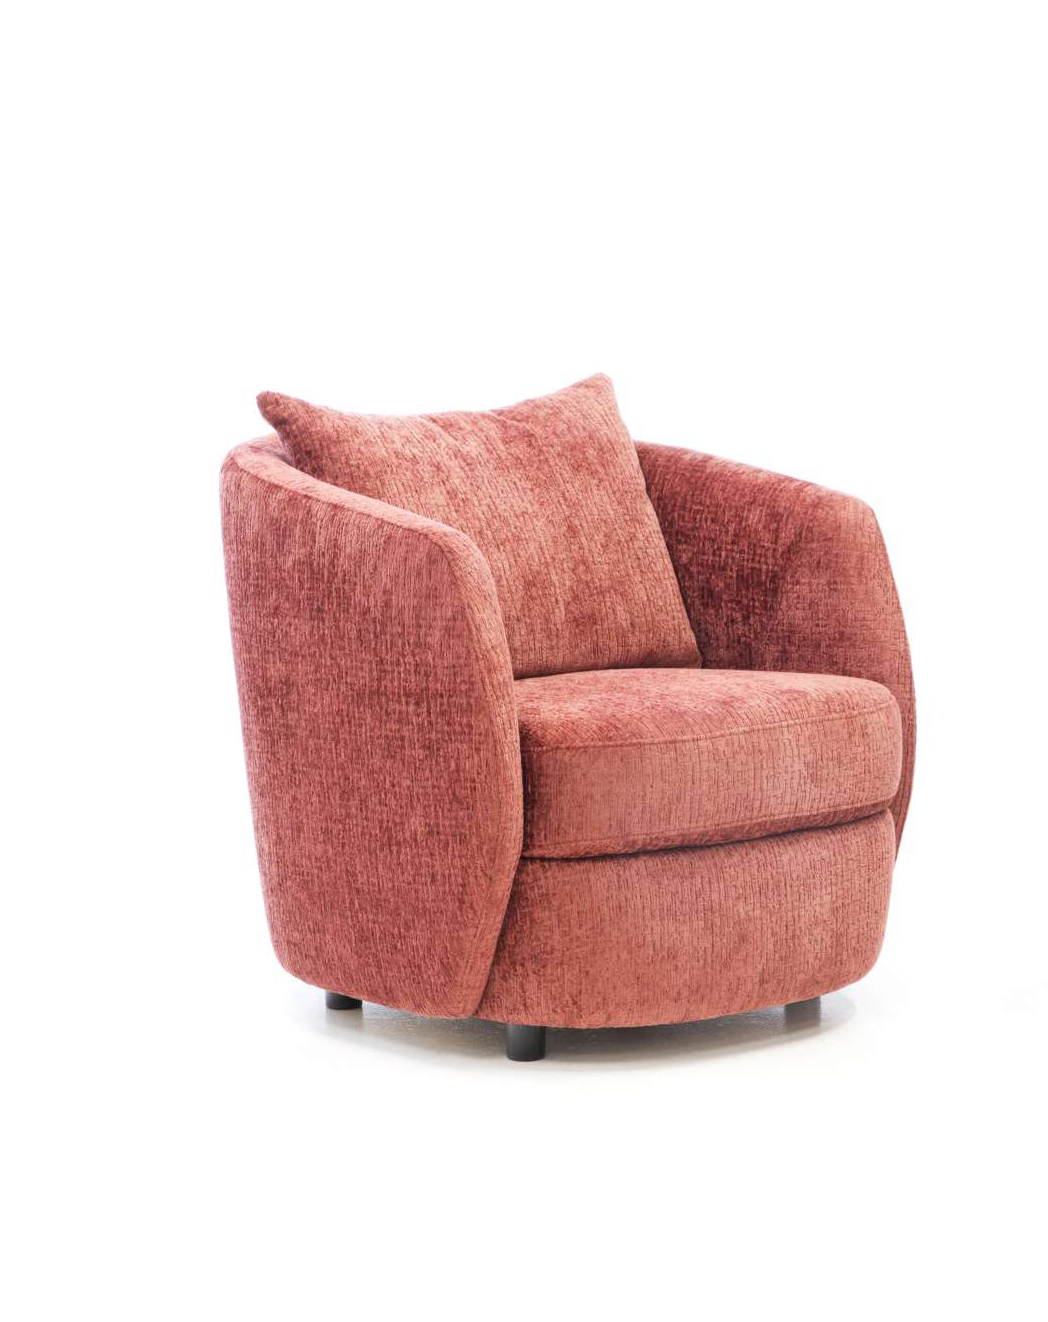 Productafbeelding van DFM fauteuil Rondo